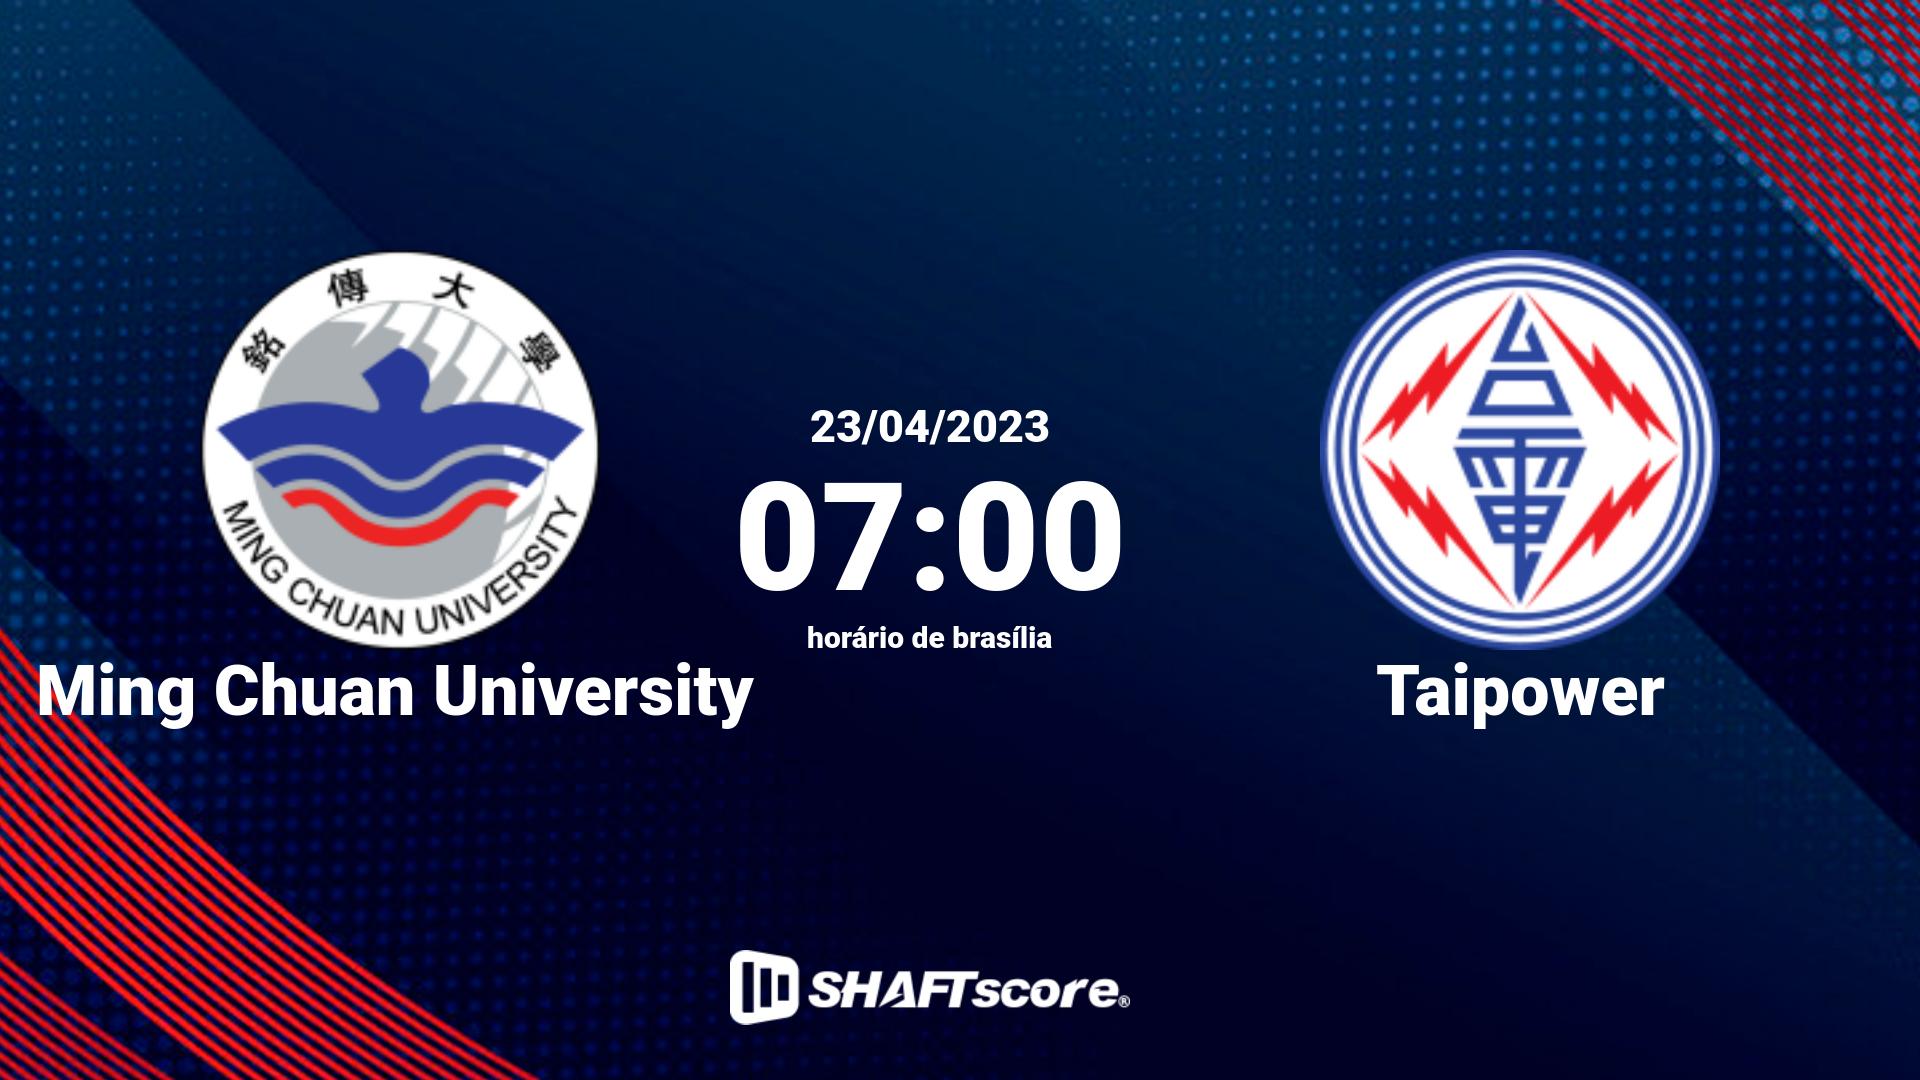 Estatísticas do jogo Ming Chuan University vs Taipower 23.04 07:00